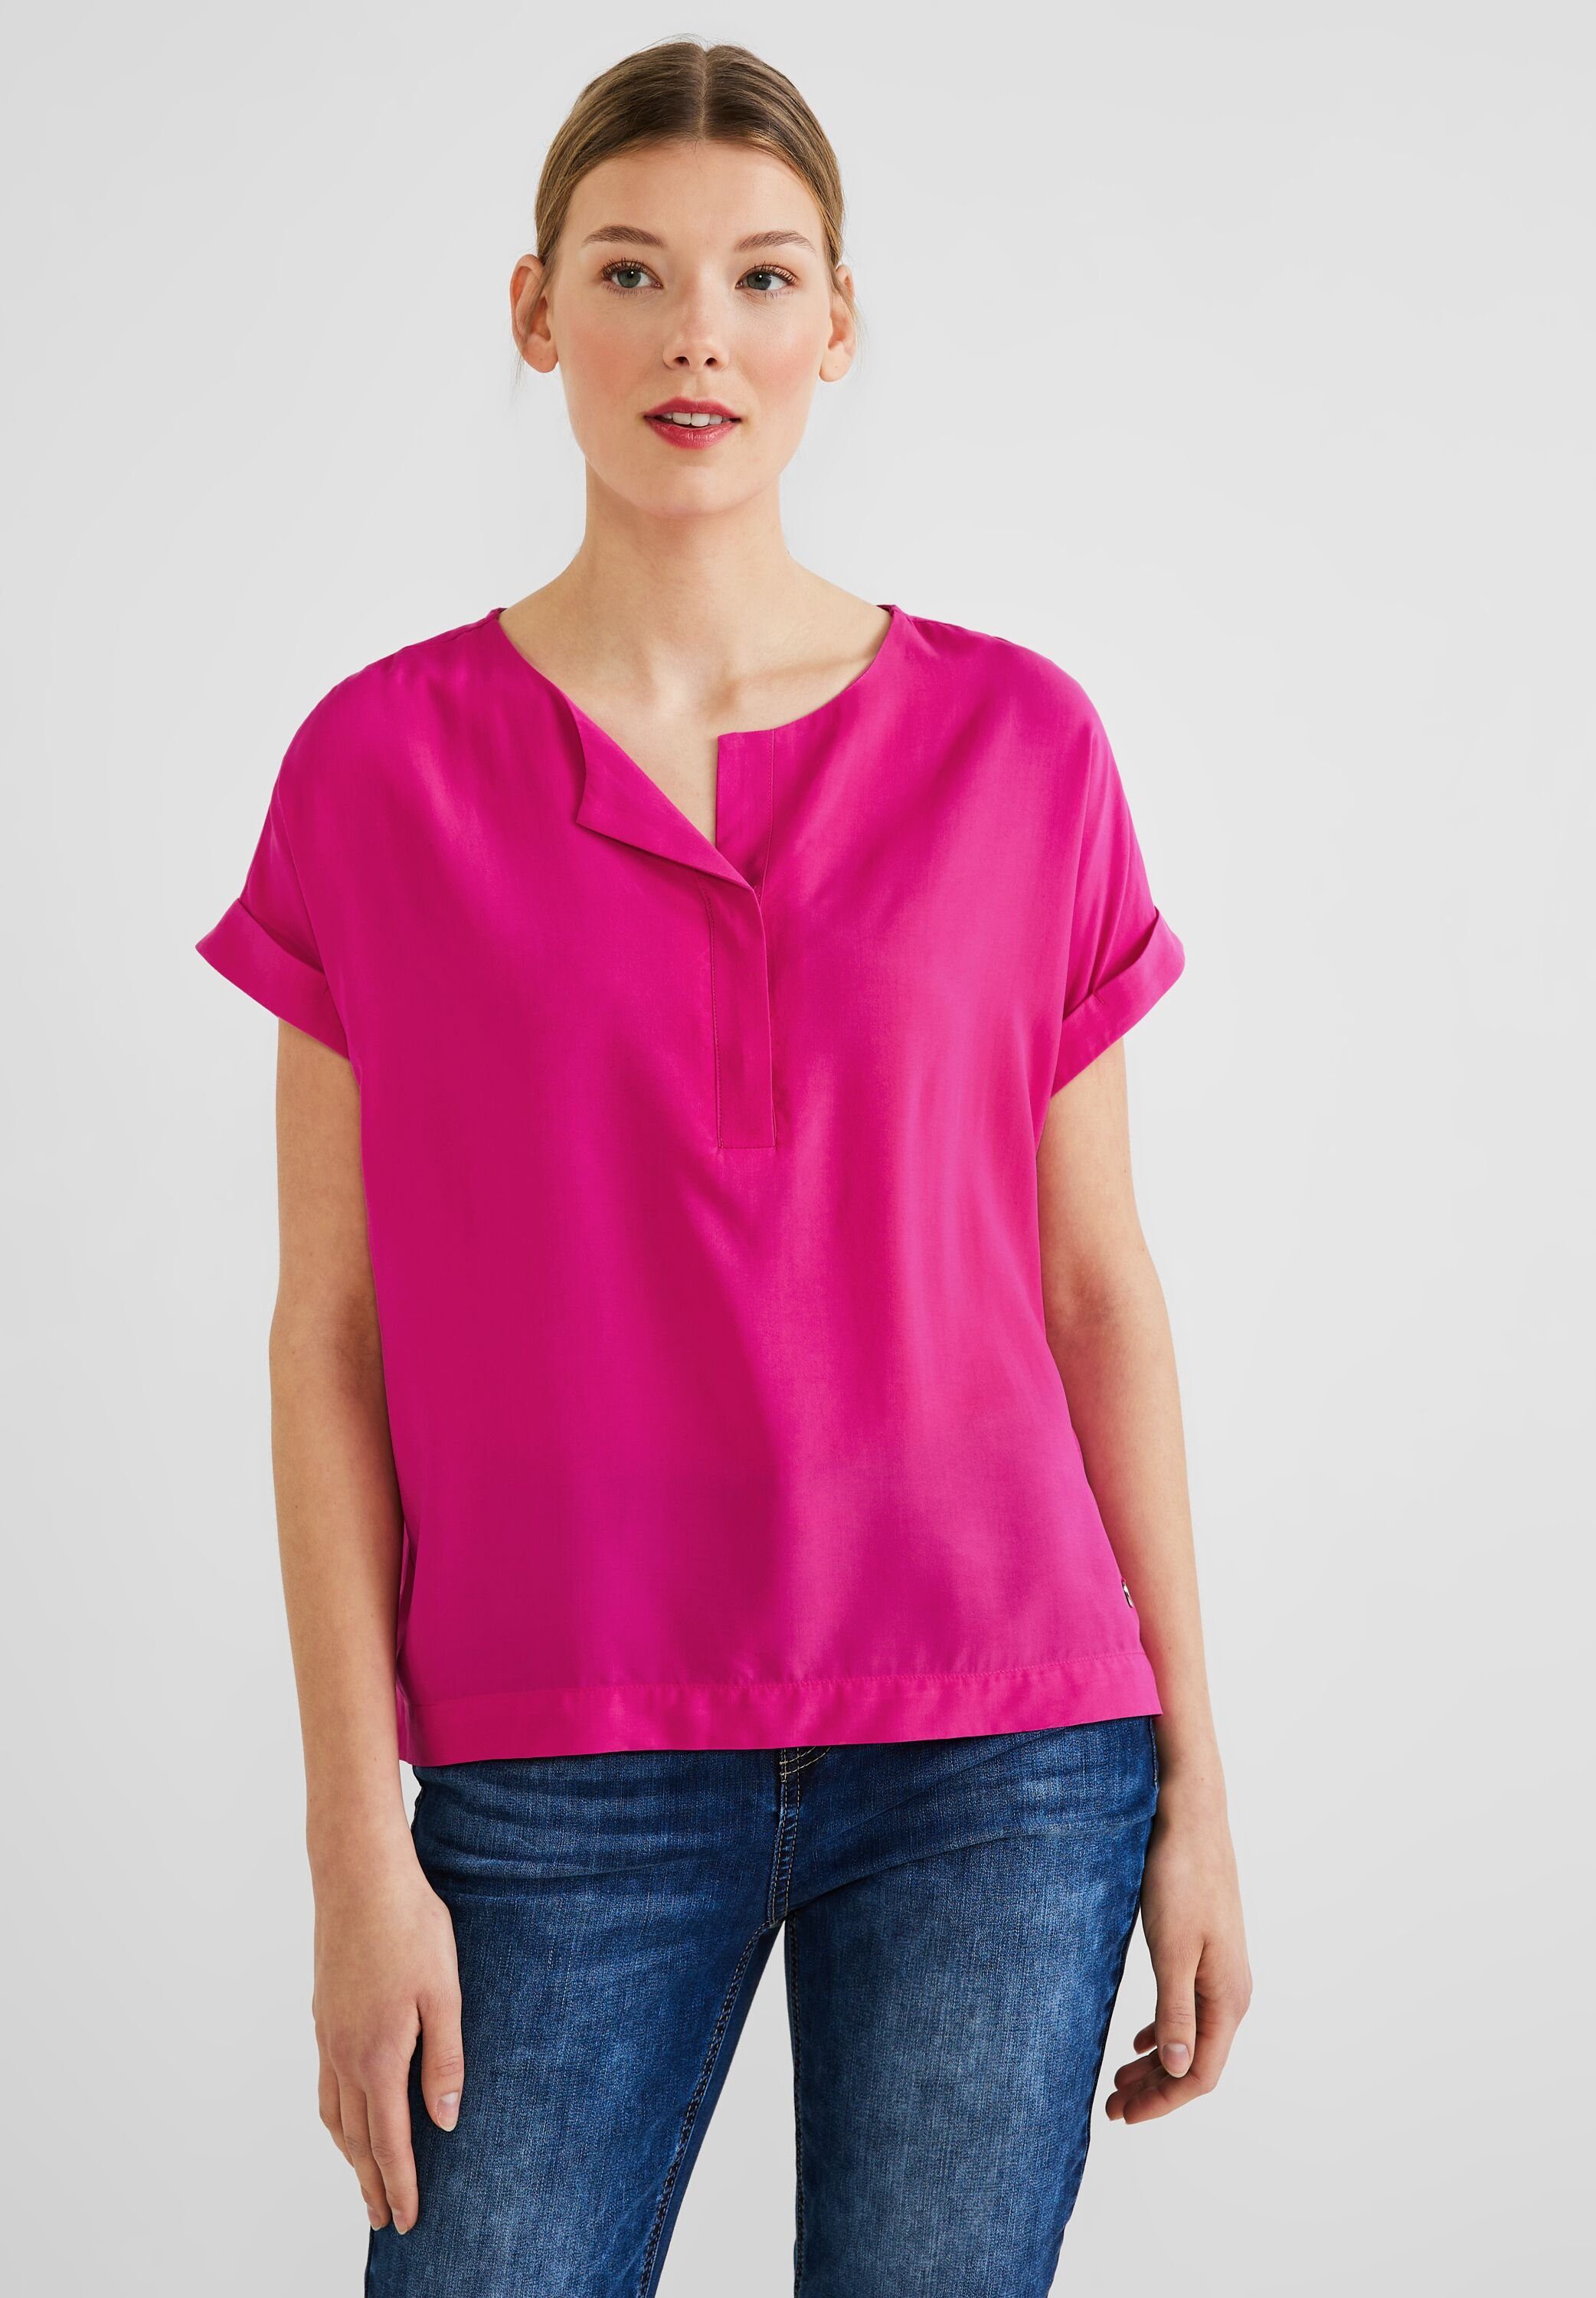 Rosa Cecil Blusen für Damen kaufen » Pinke Cecil Blusen | OTTO | Tunikashirts